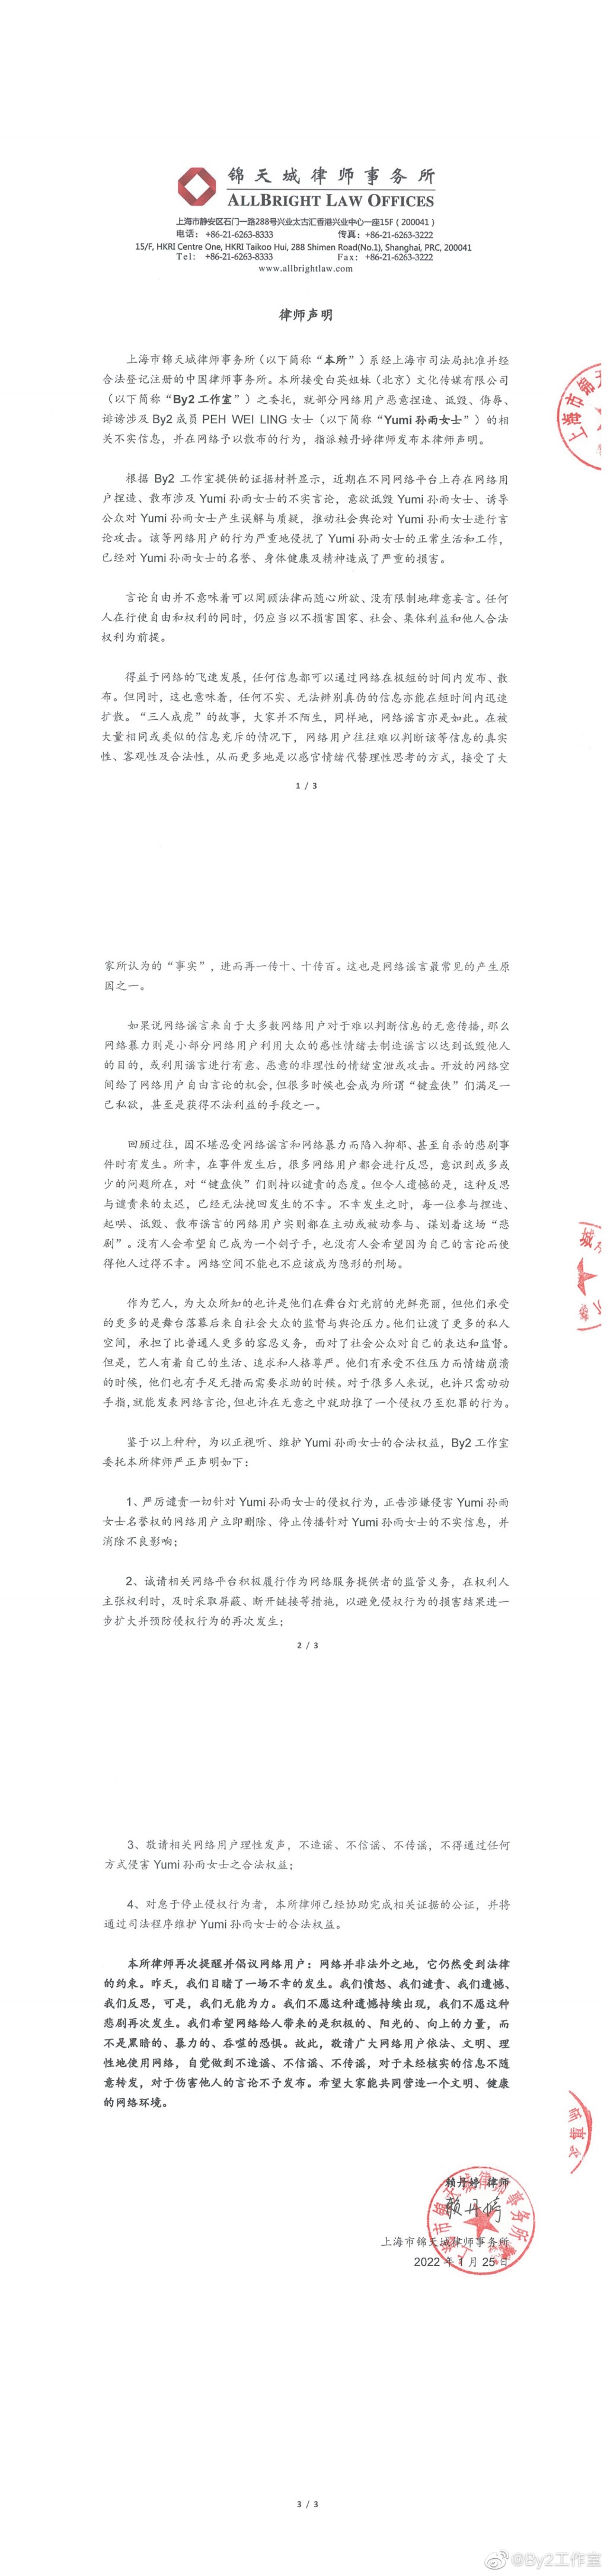 不過，律師聲明並未針對李靚蕾，而是針對涉嫌侵害Yumi名譽的網路用戶。